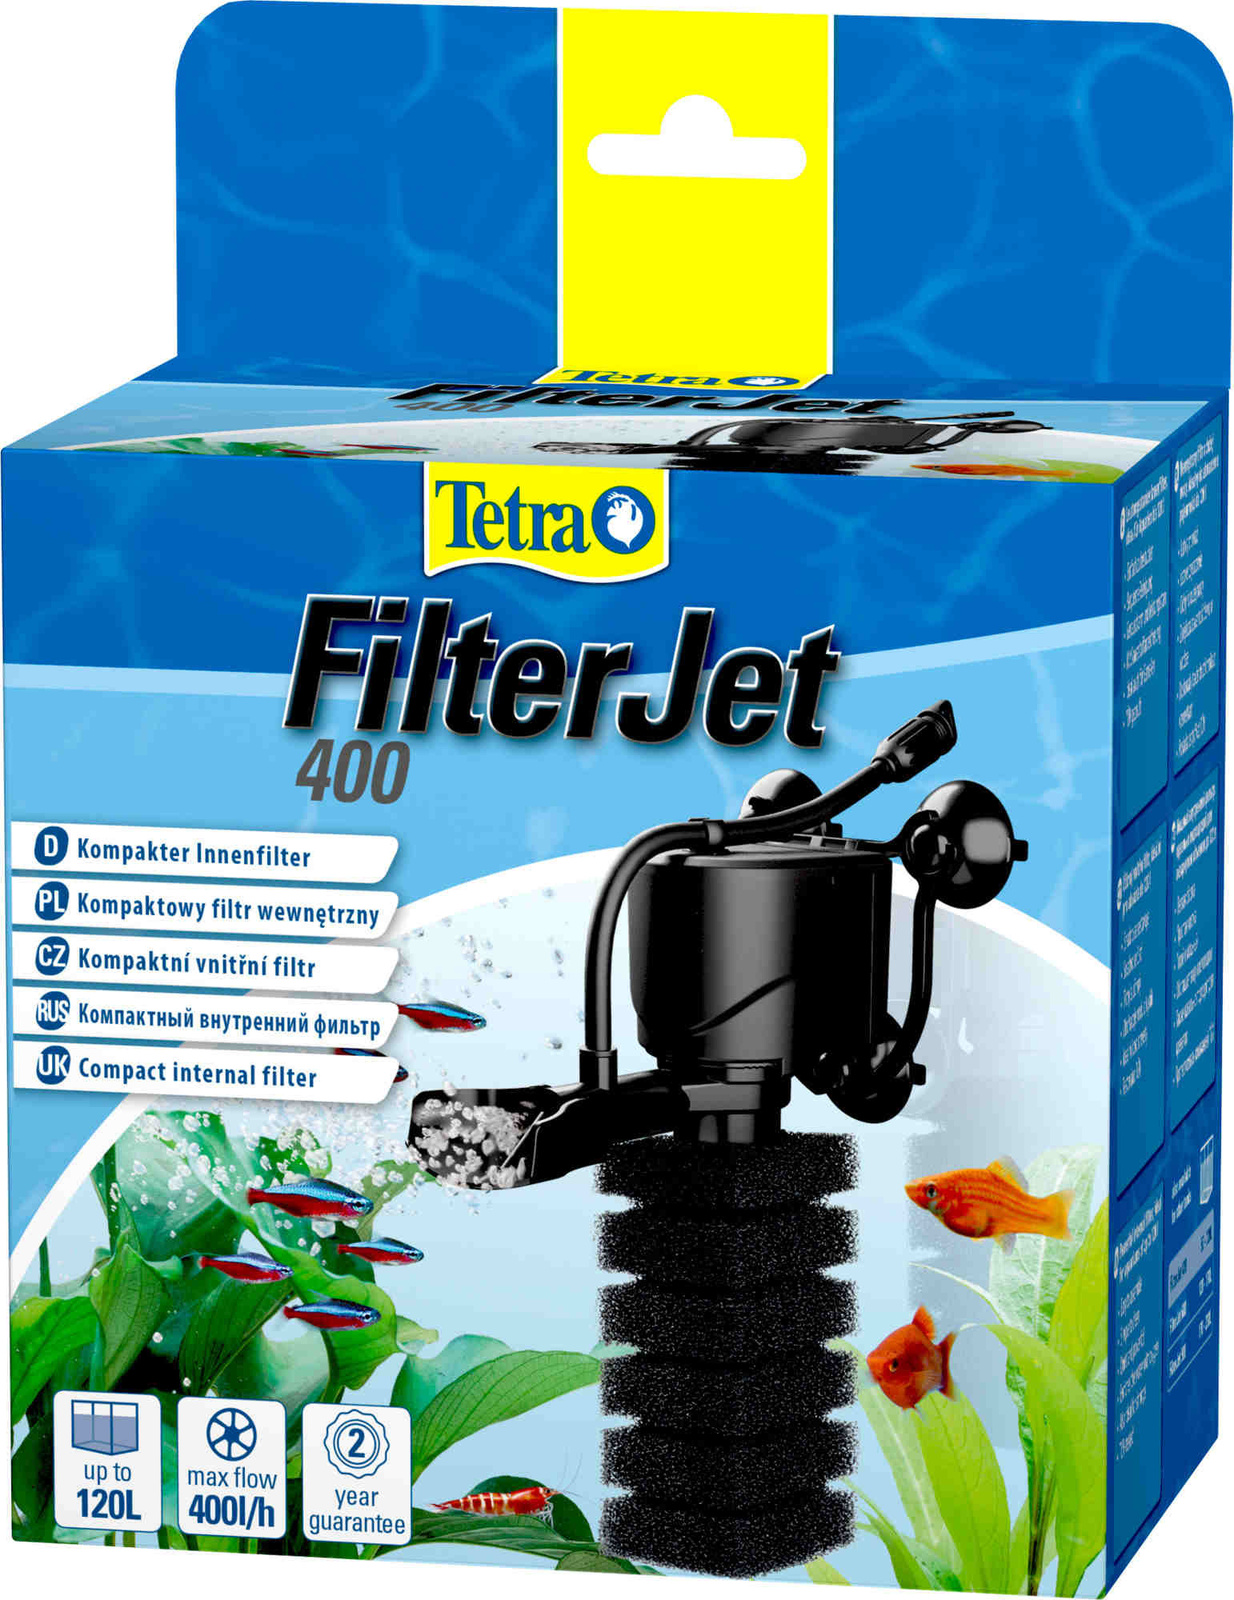 Tetra (оборудование) Tetra (оборудование) внутренний фильтр FilterJet 400, для аквариумов 50 – 120л (460 г)